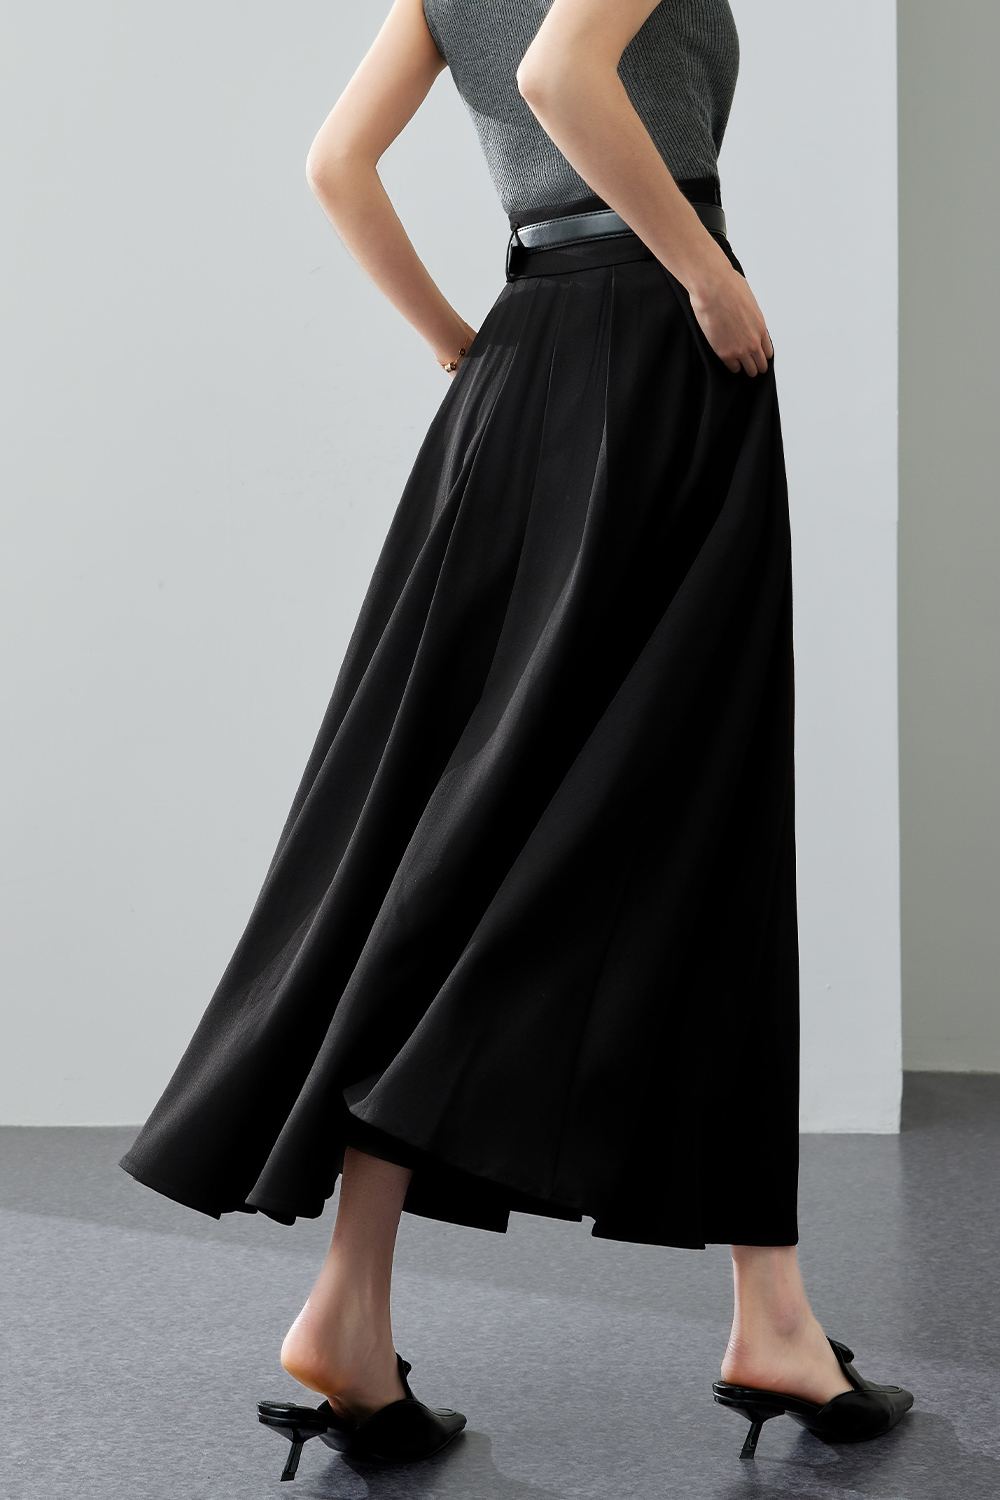 Black Pleated Skirt